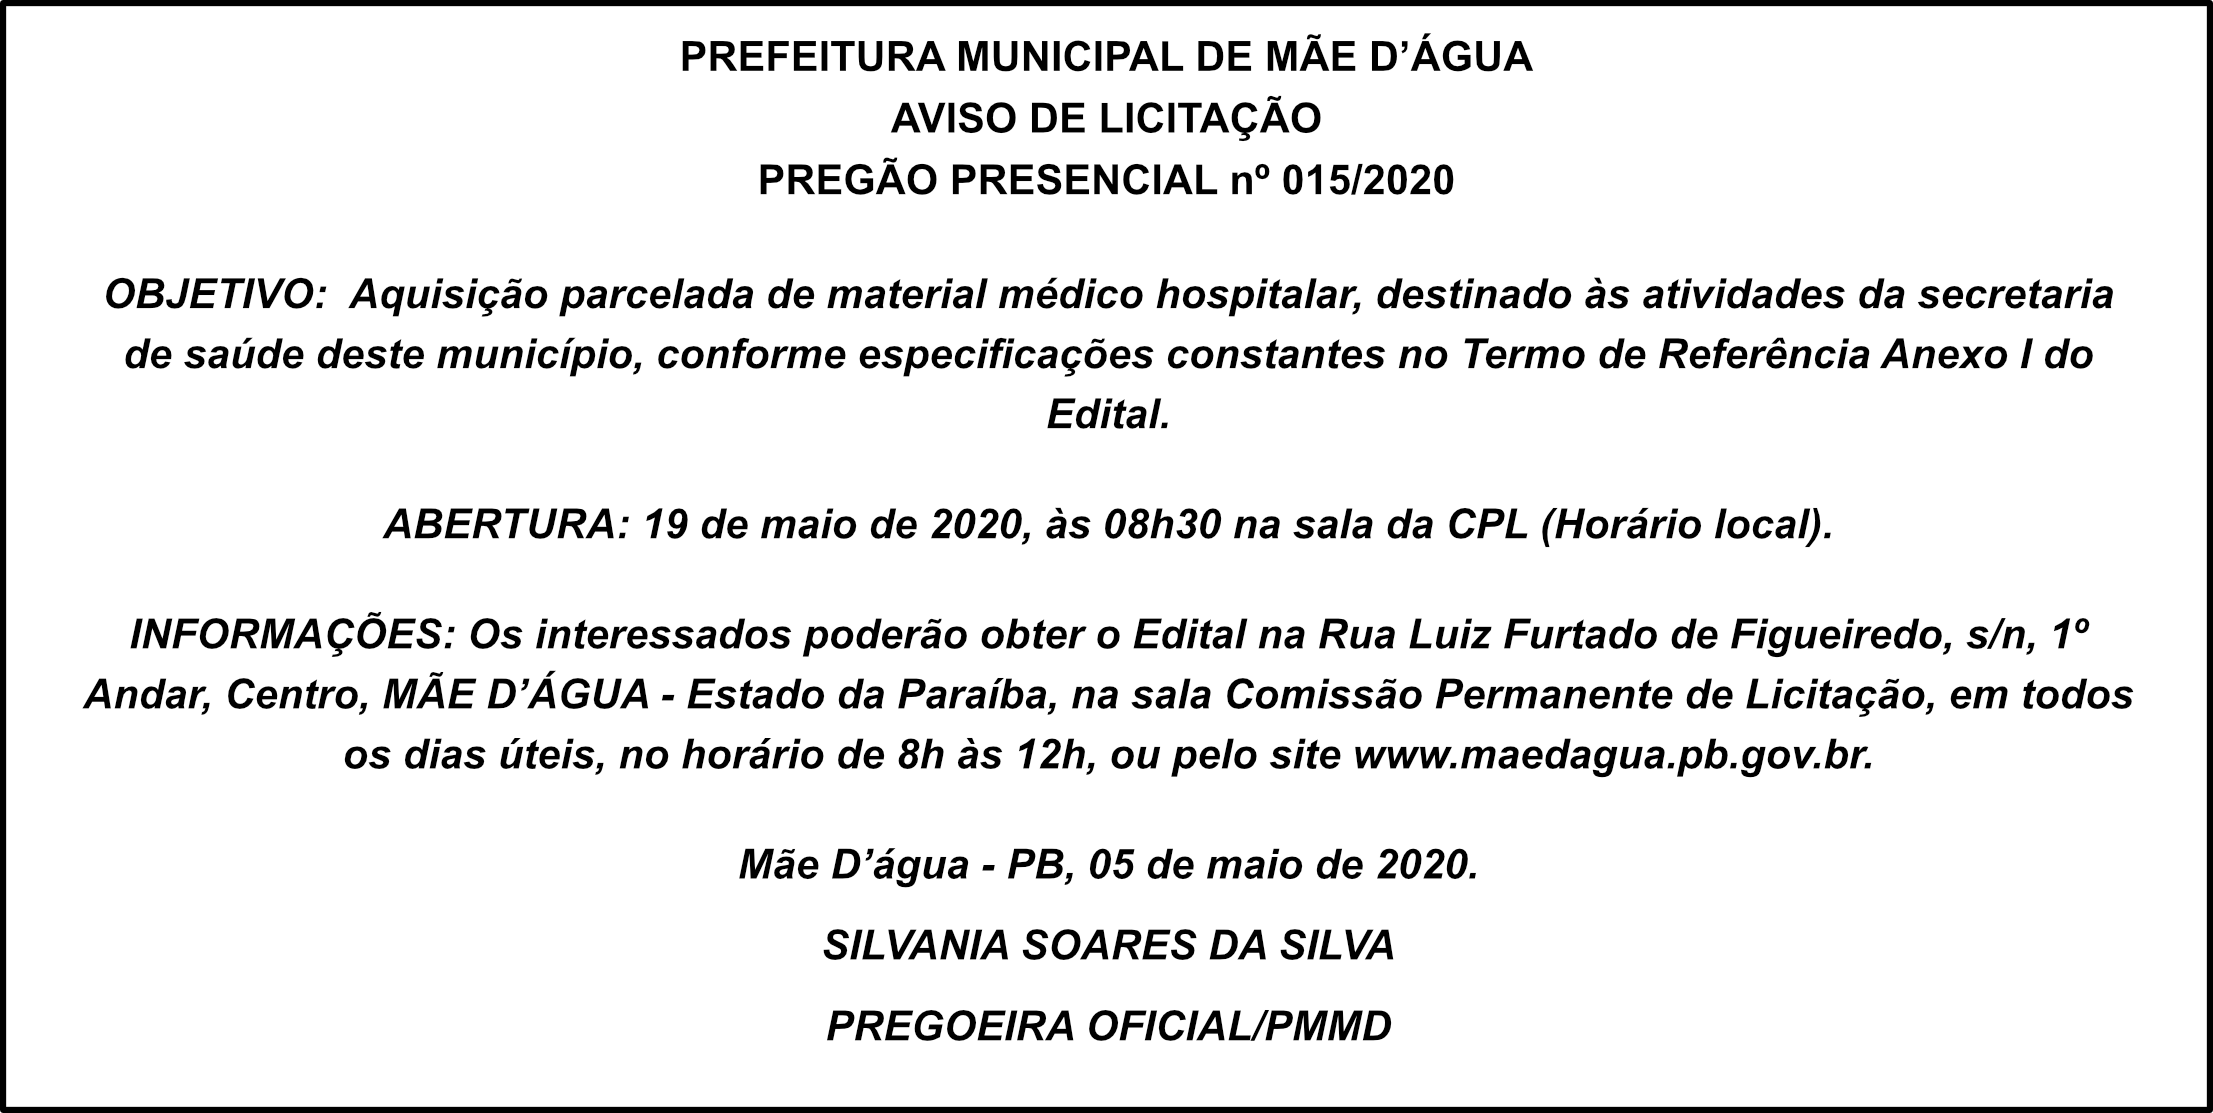 PREFEITURA MUNICIPAL DE MÃE D’ÁGUA – AVISO DE LICITAÇÃO – PREGÃO PRESENCIAL Nº 015/2020